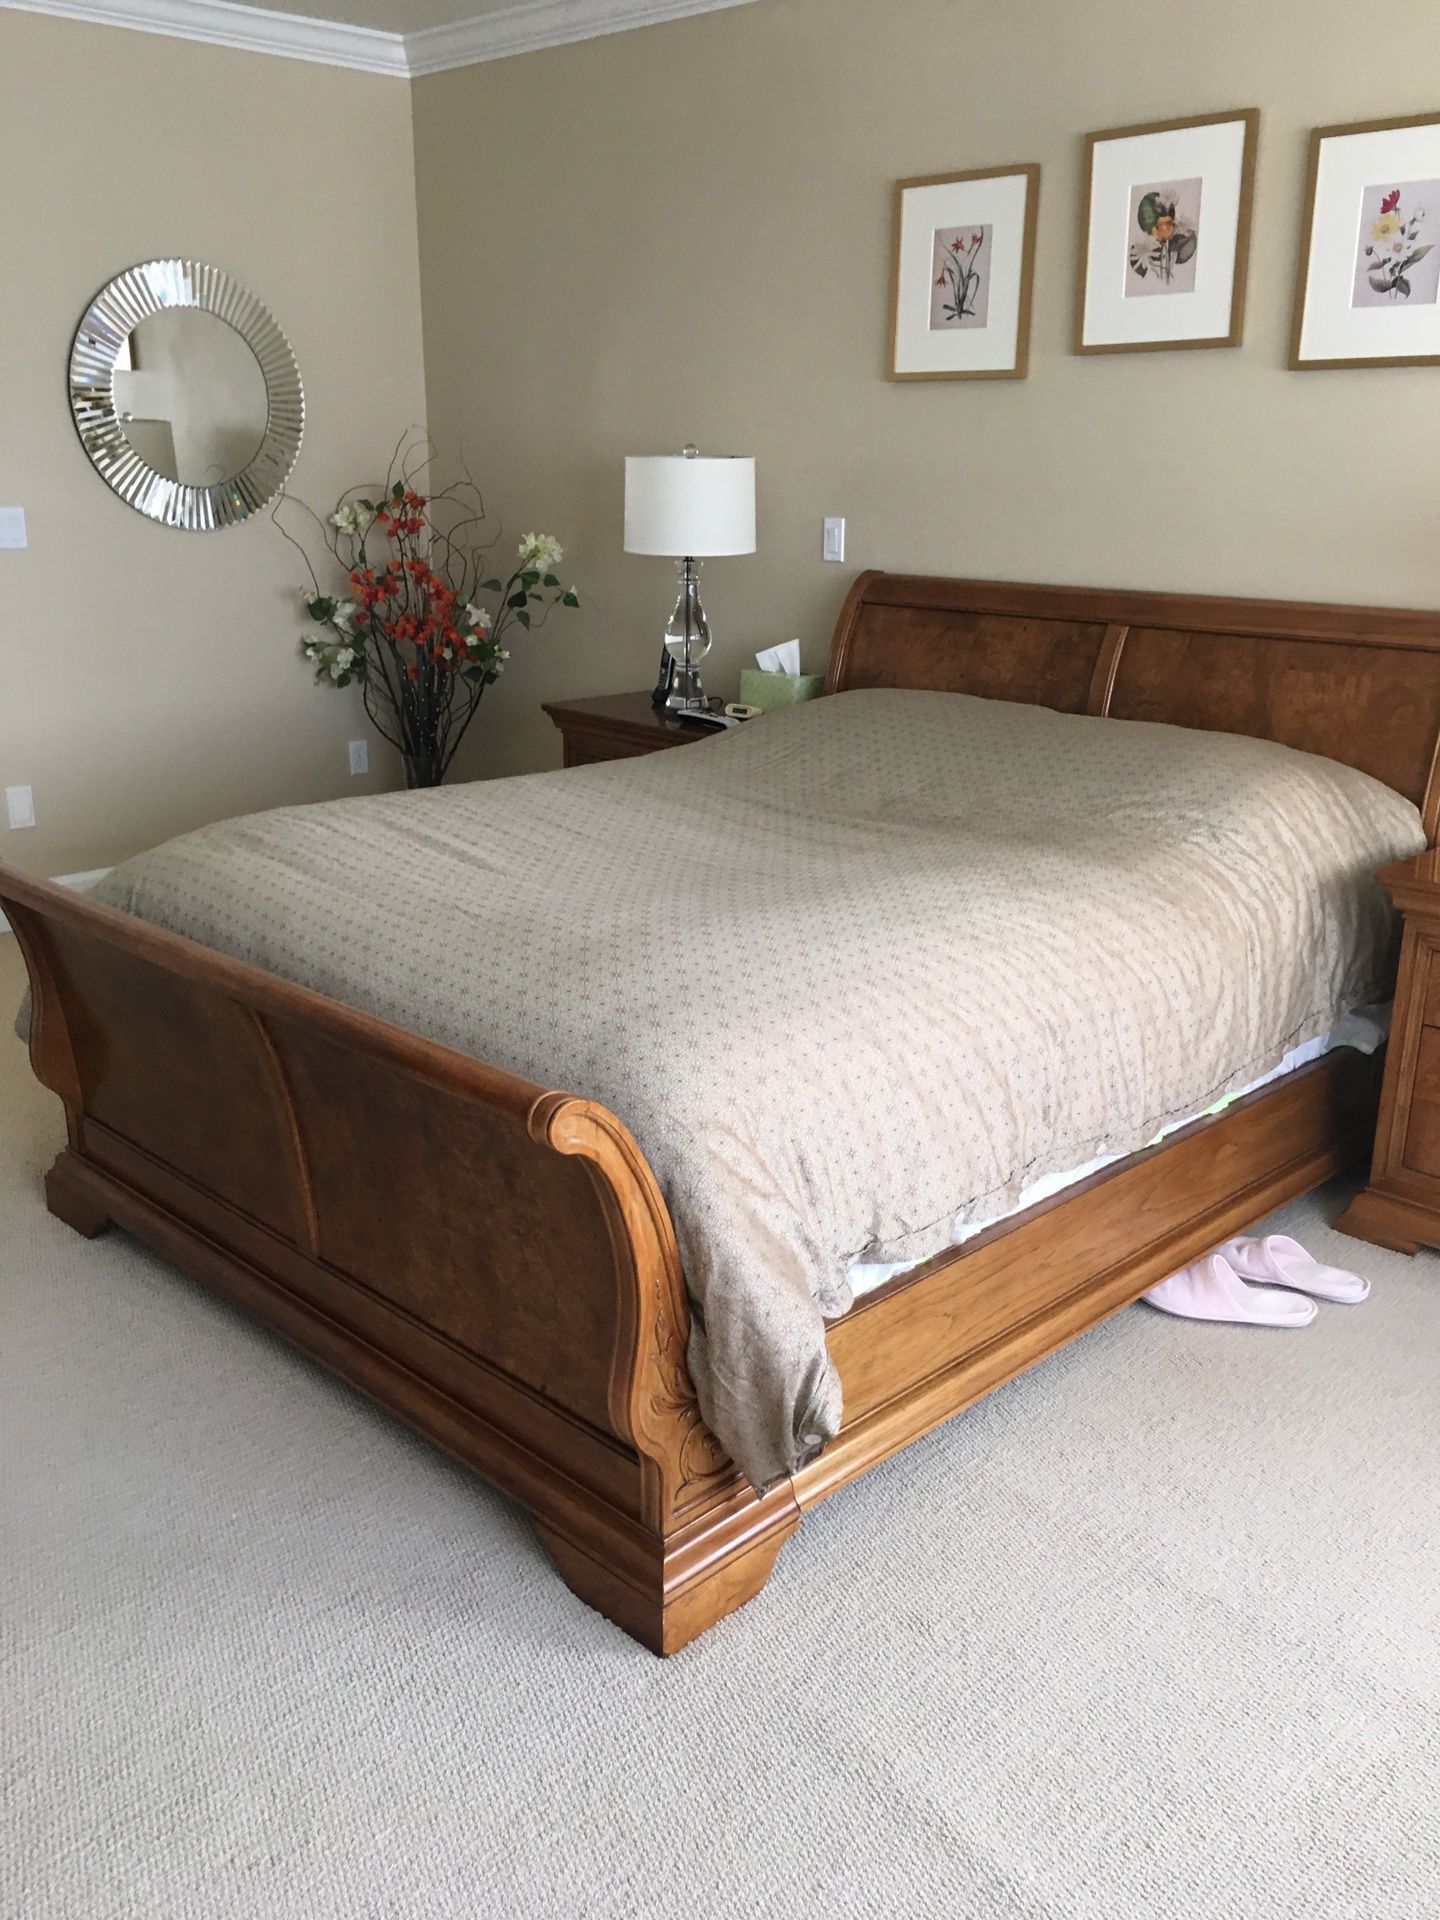 5 Piece Queen Bedroom Set - Selden Burled Wood